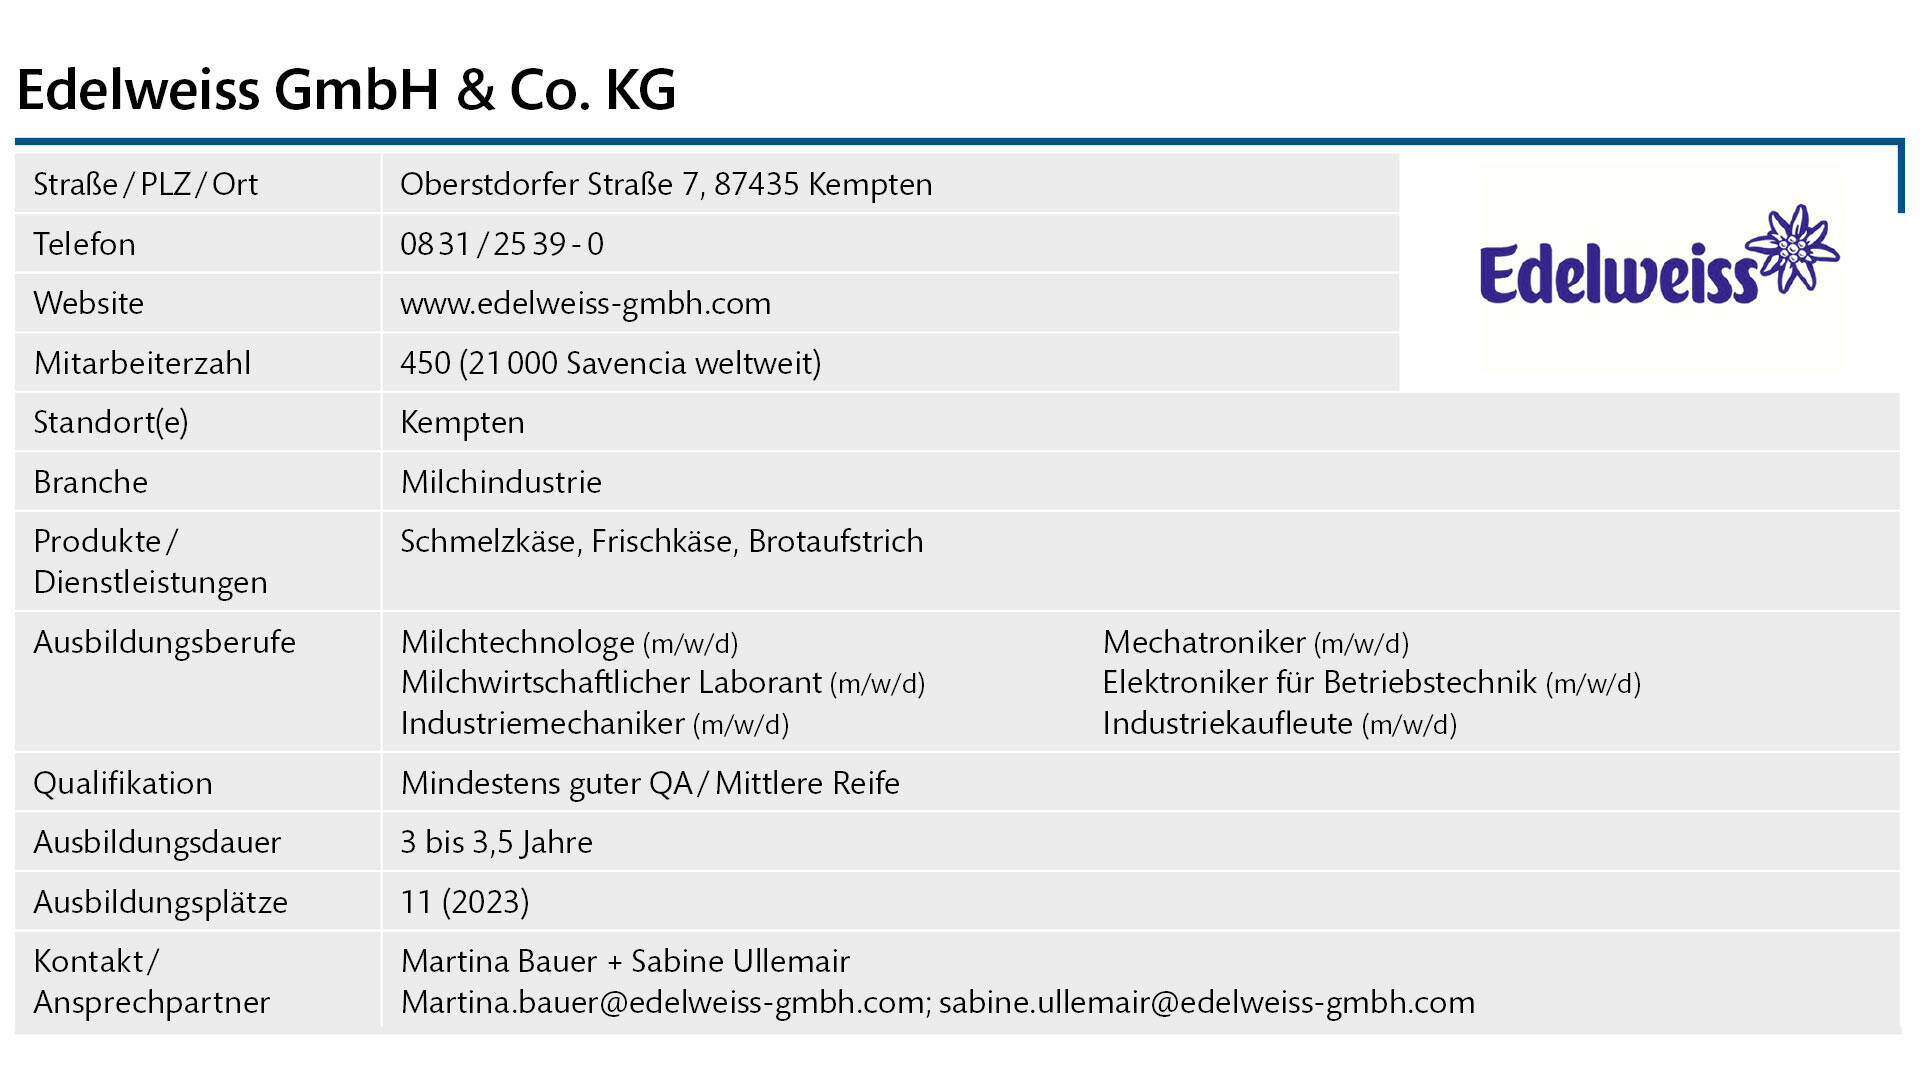 Steckbrief Edelweiss GmbH